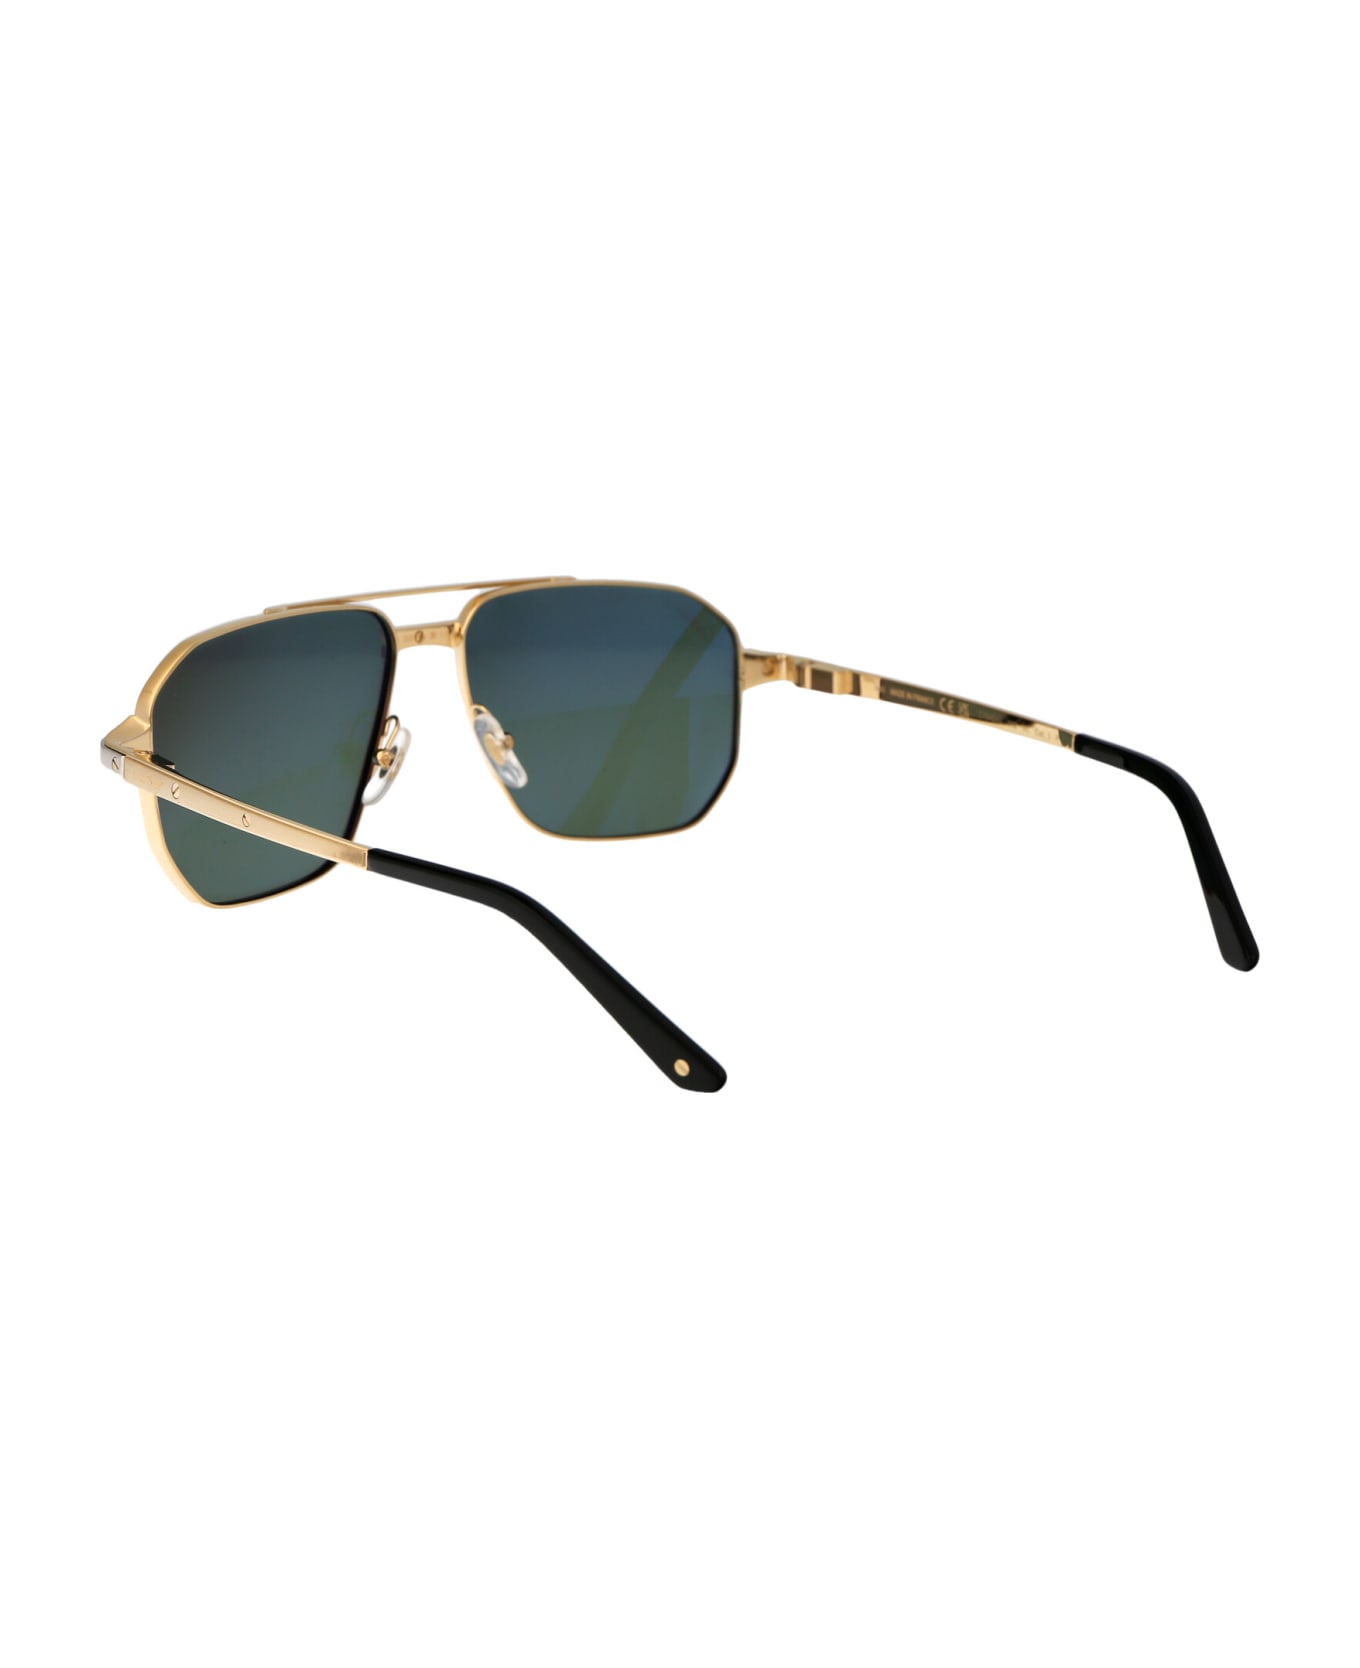 Cartier Eyewear Ct0424s Sunglasses - 002 GOLD GOLD GREEN